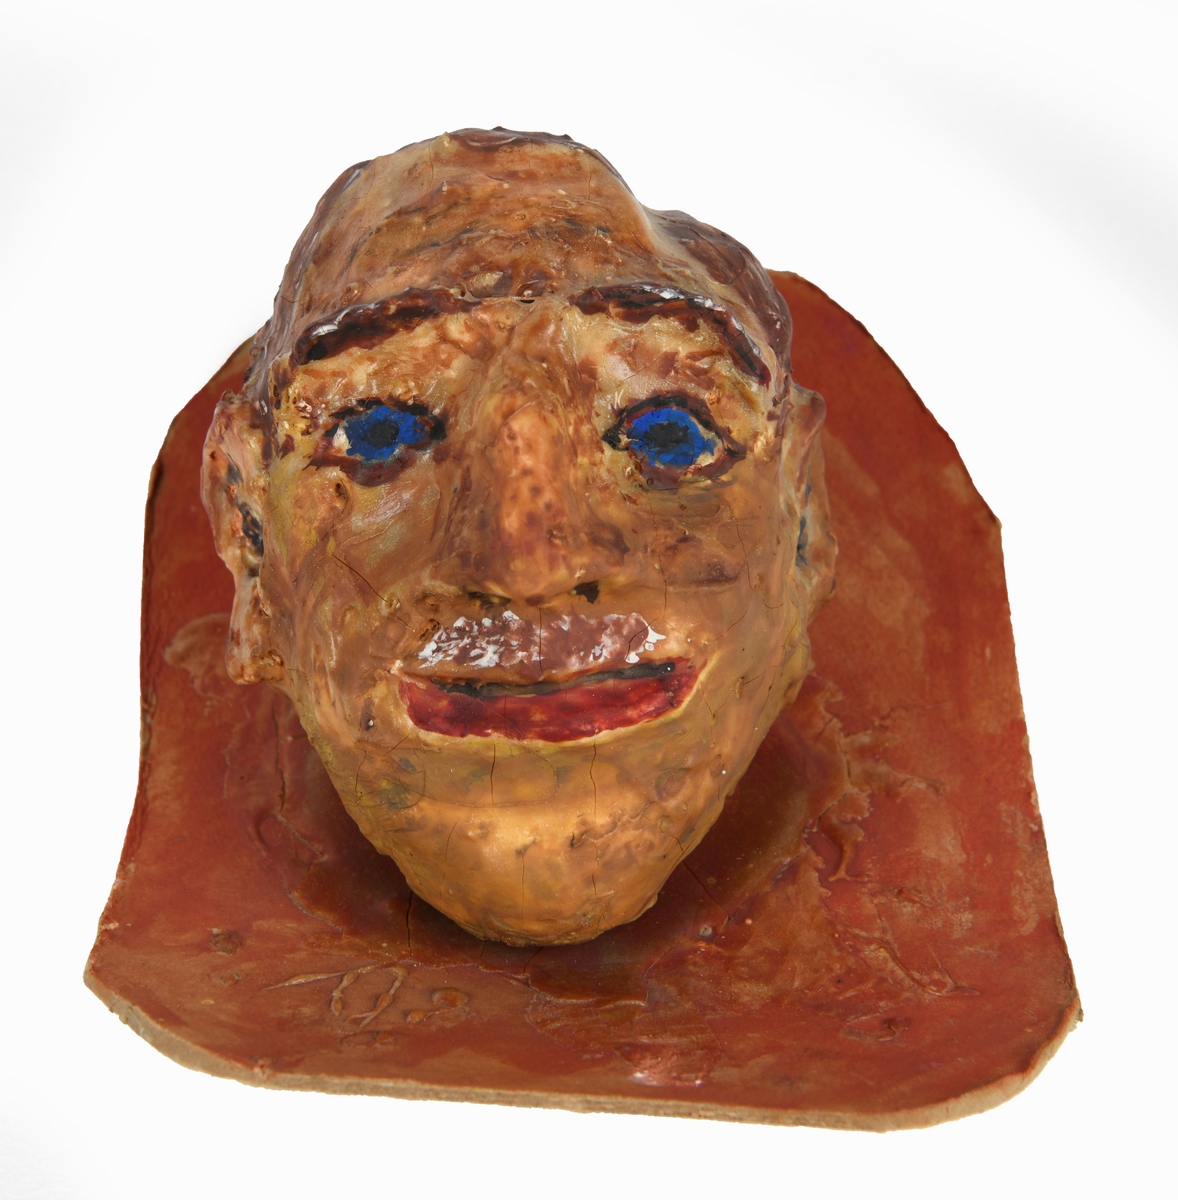 Et mannshode av papp/papir laget av en elev (i formingsfag). Hodet er i pappmasje og er montert på en brunmalt papplate. Hodet er malt i brunt med mørke brune øyenbryn, blå øyne og rød munn.